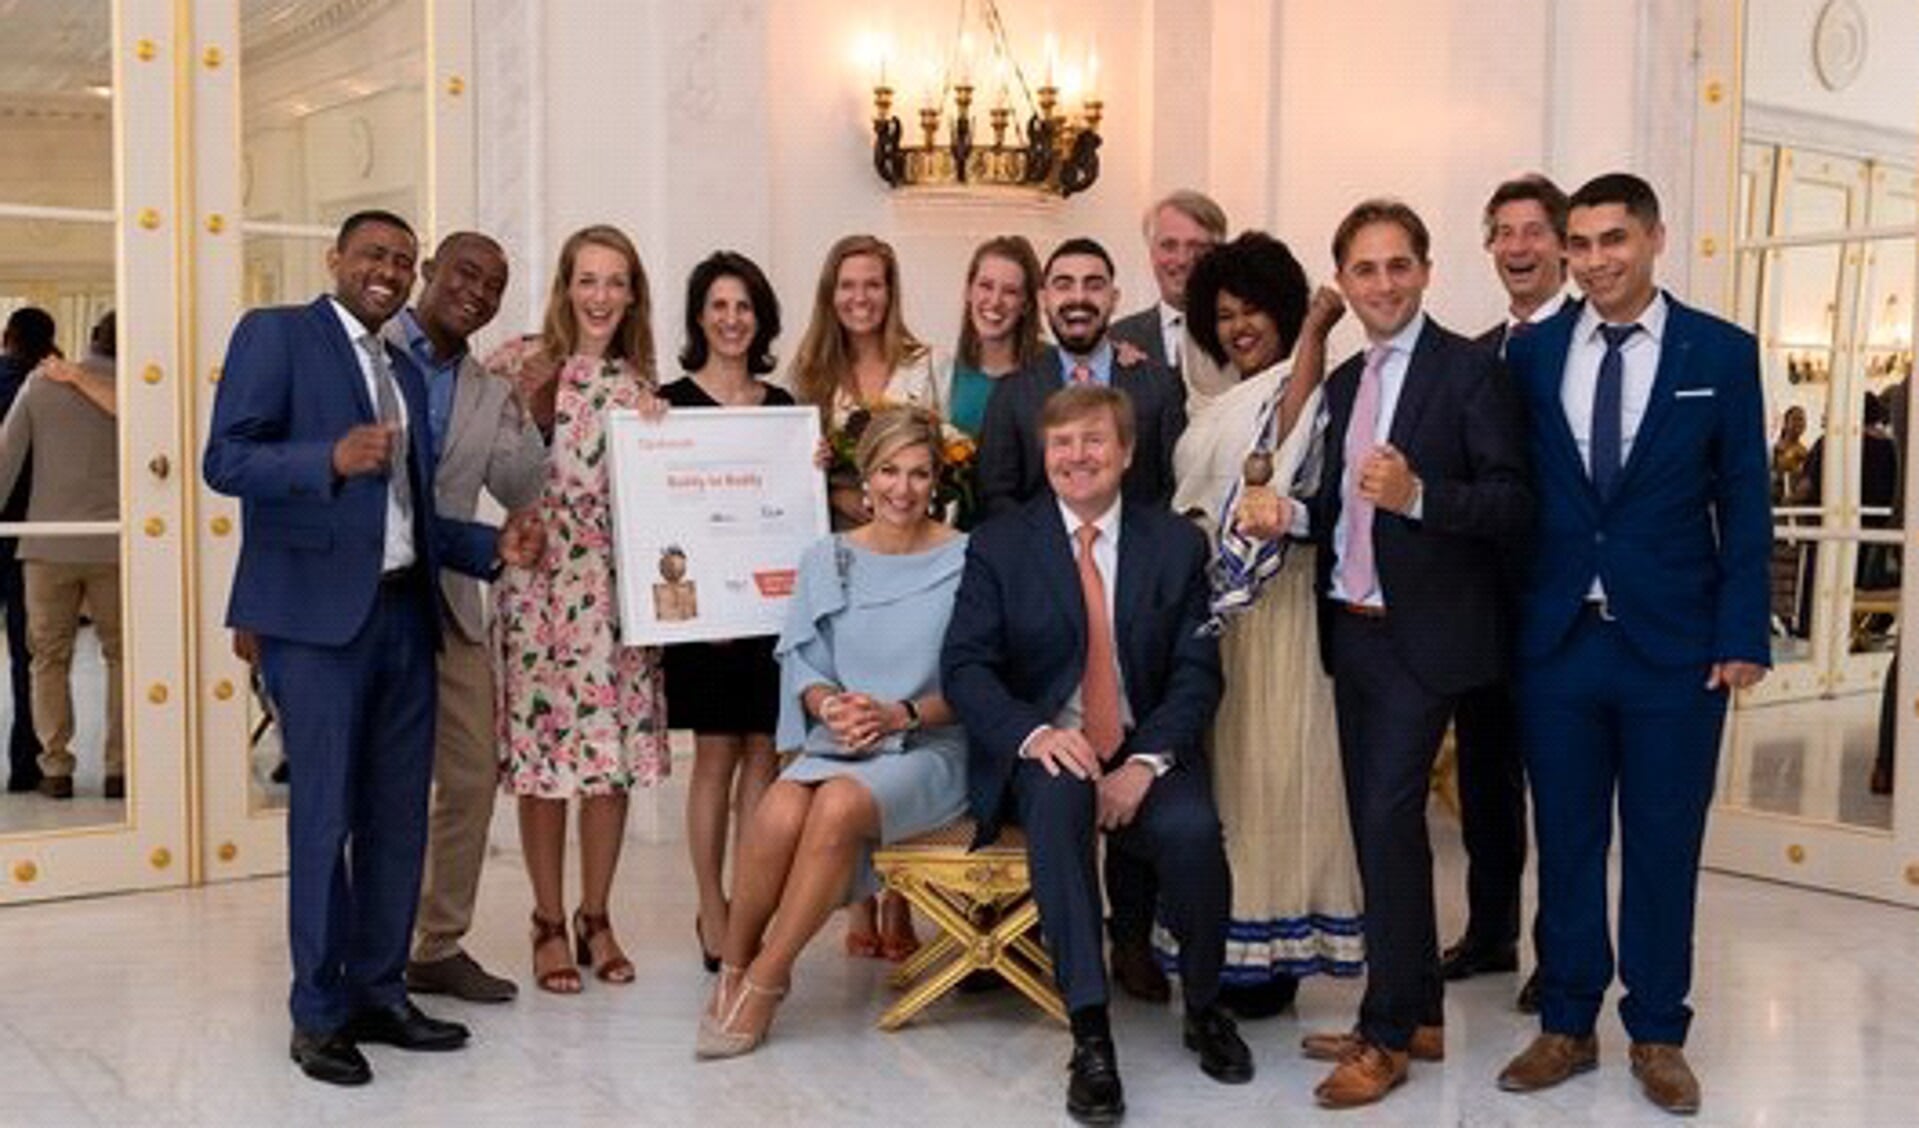 De winnaars van de Appeltjes van Oranje 2018 samen met Koning Máxima en Koning Willem-Alexander. Foto: Oranje Fonds – Bart Homburg.